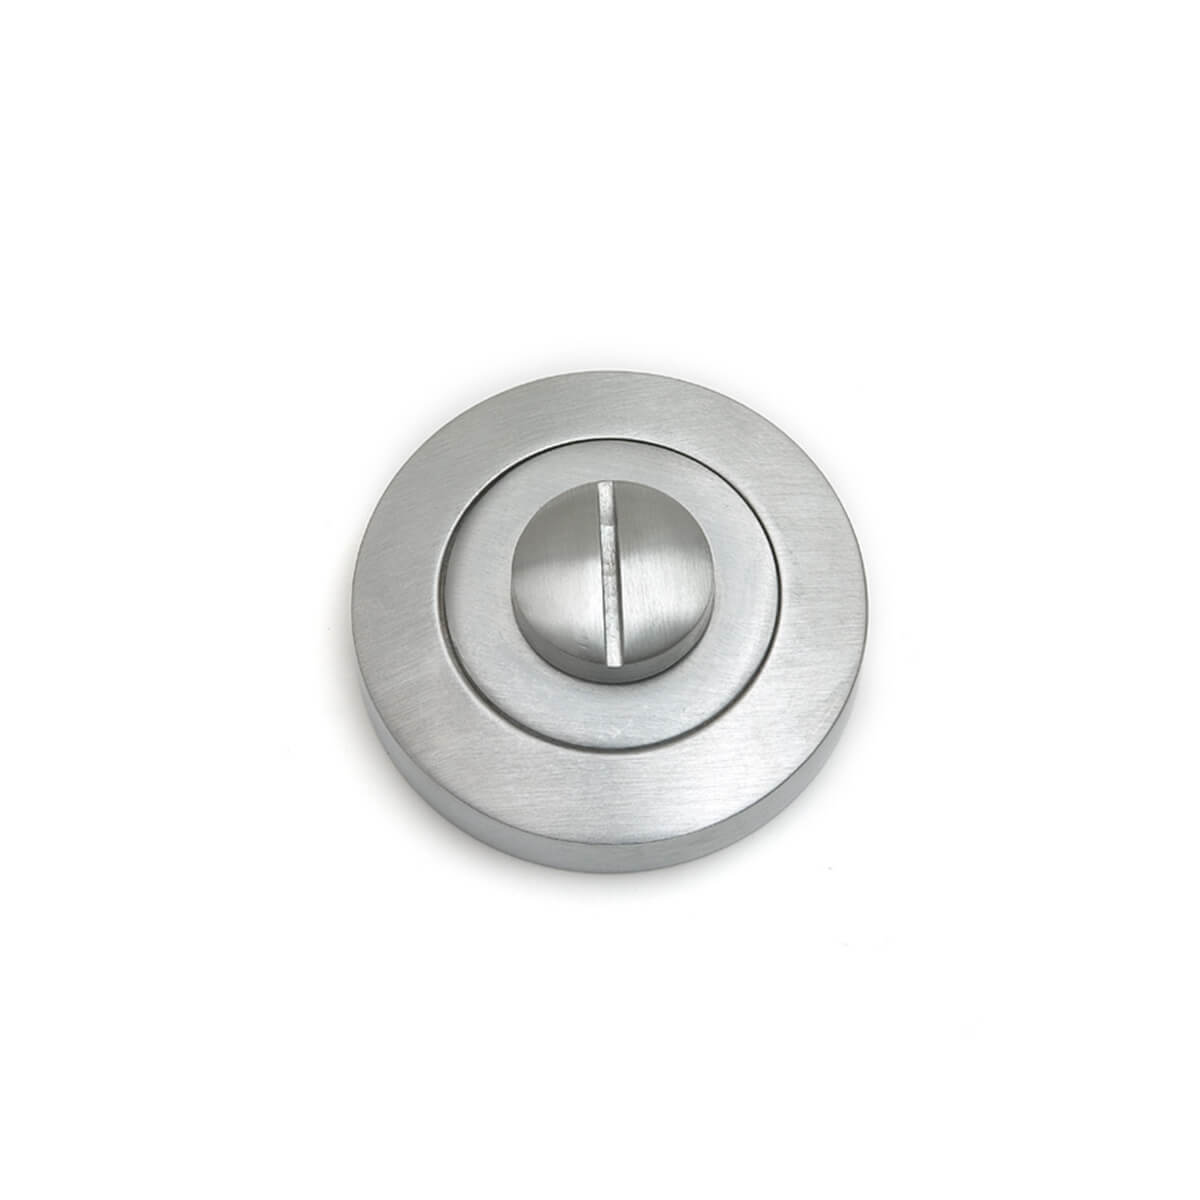 53mm Round Escape Button Escutcheon - Satin Chrome